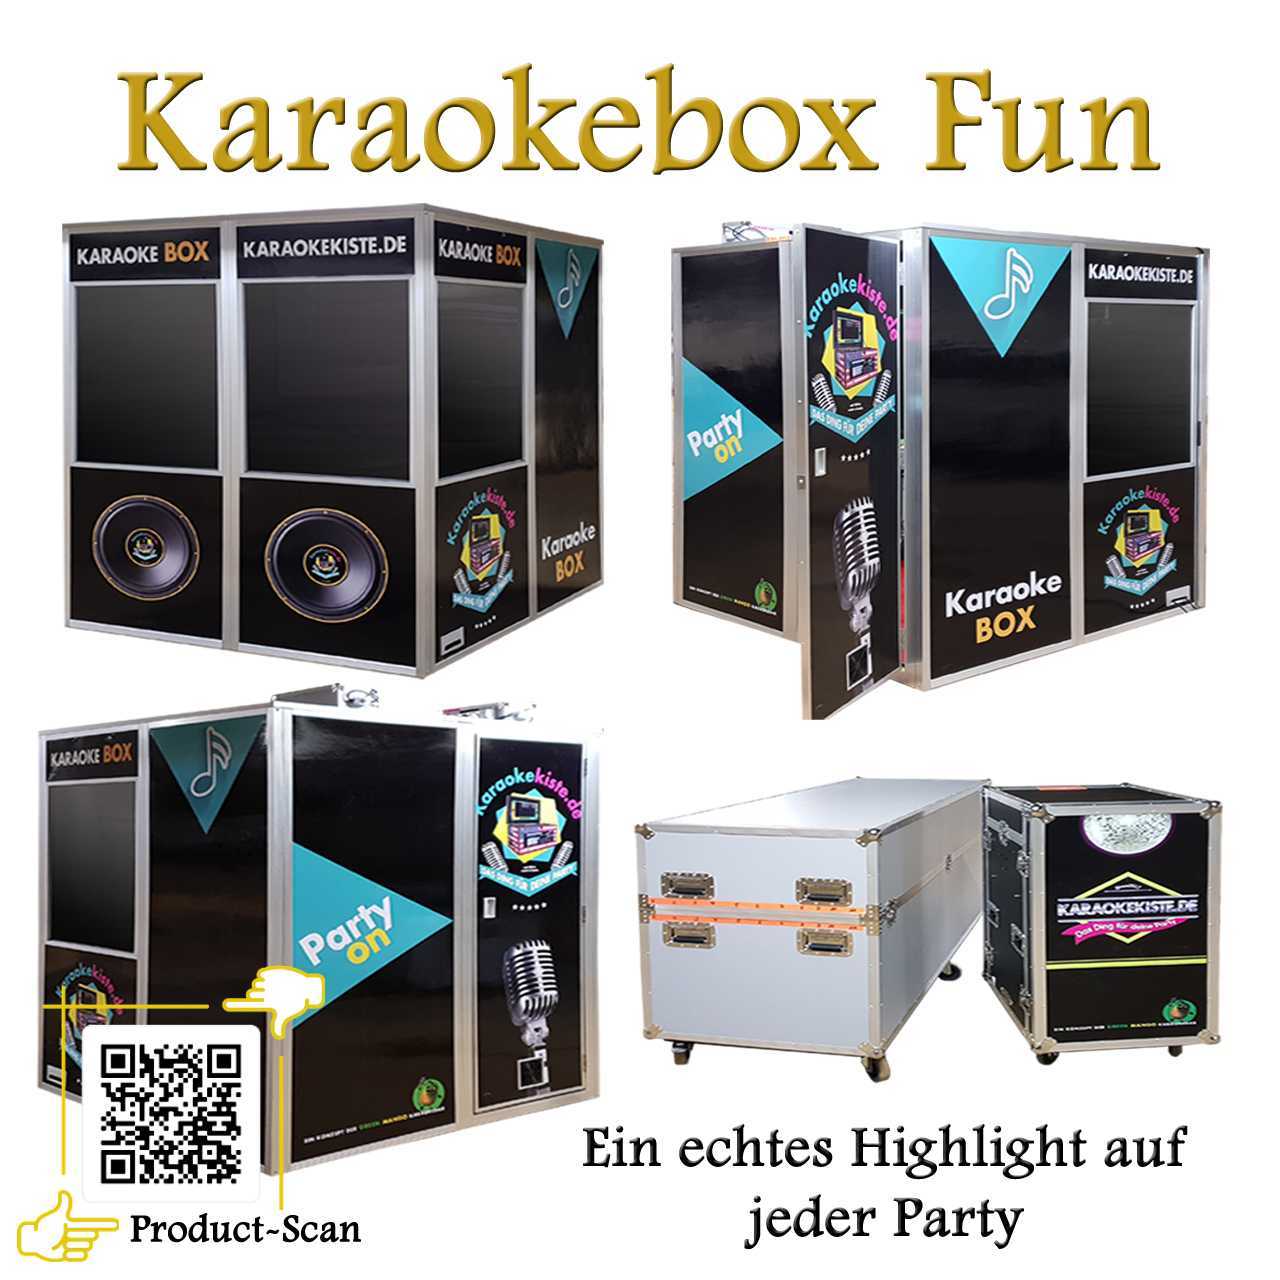 Karaoke Box Fun-1